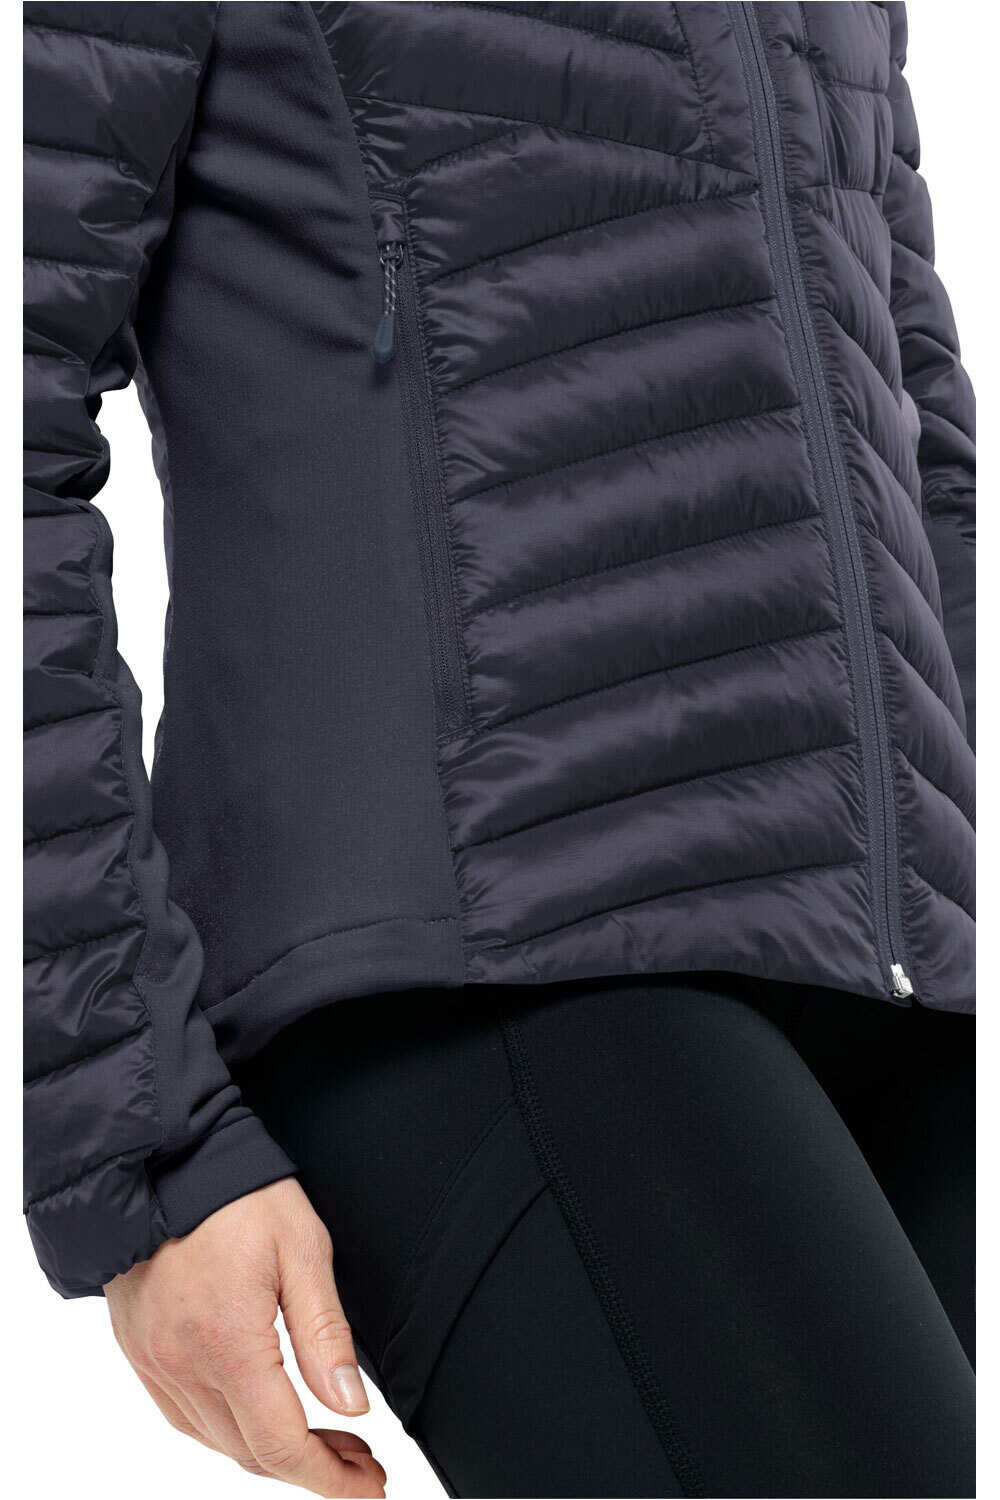 Jack Wolfskin chaqueta outdoor mujer ROUTEBURN PRO INS JKT W vista detalle